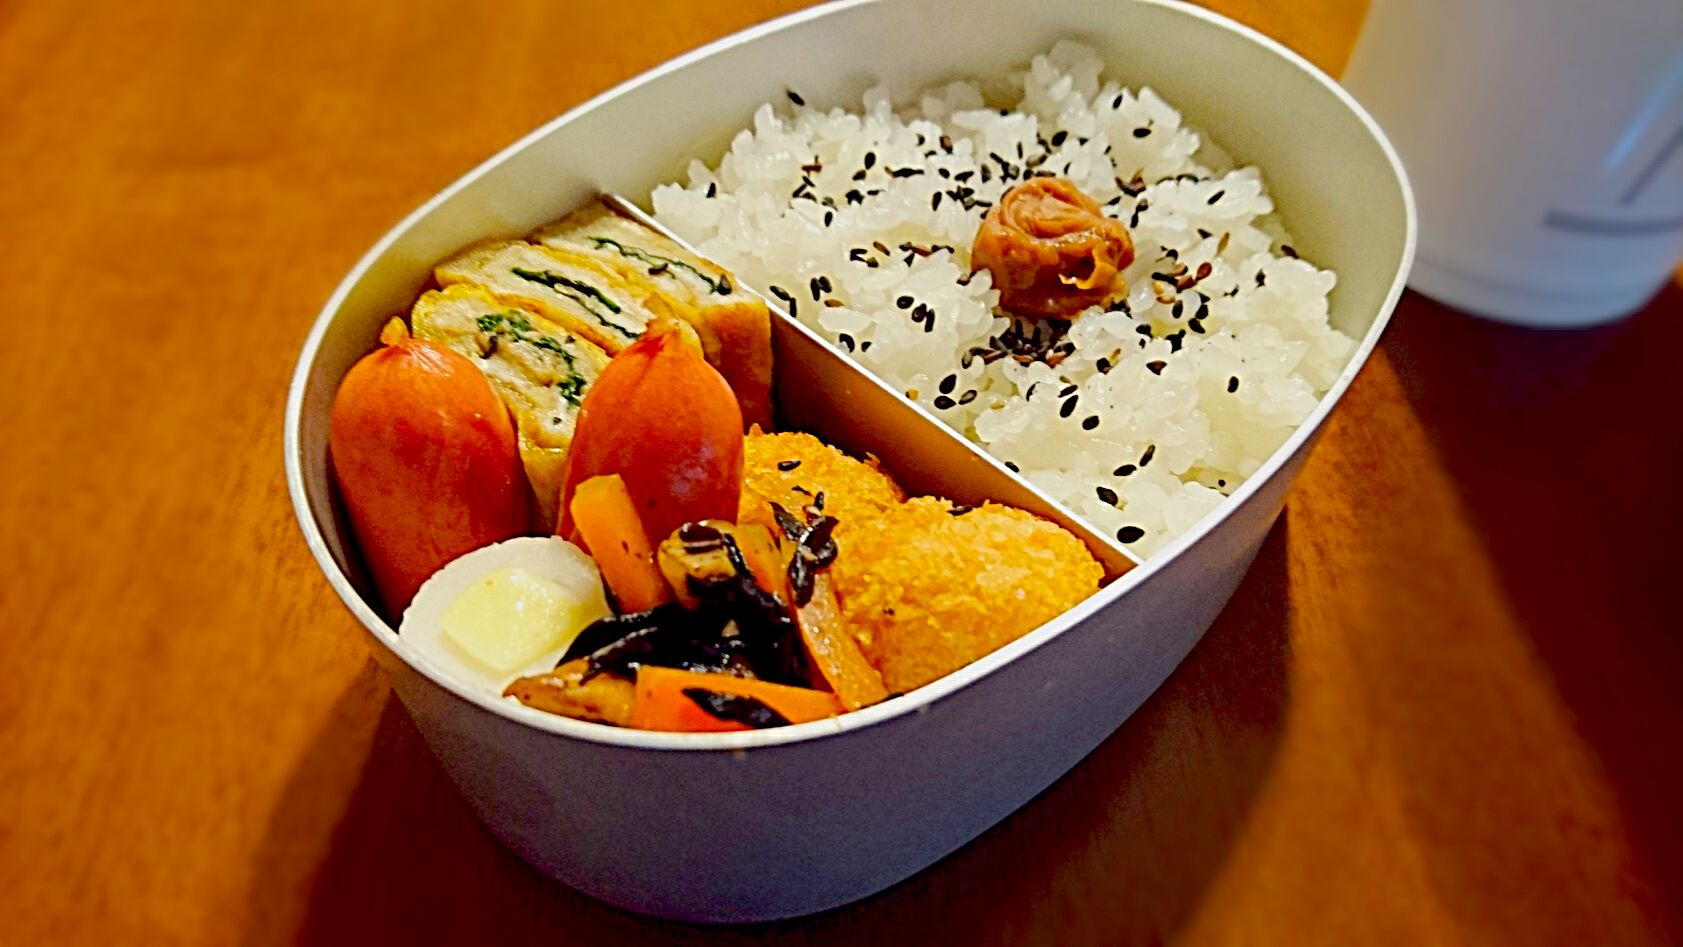 美容 ダイエット 小さめのお弁当箱 Bento世界グランプリ17 ヤマサ醤油株式会社